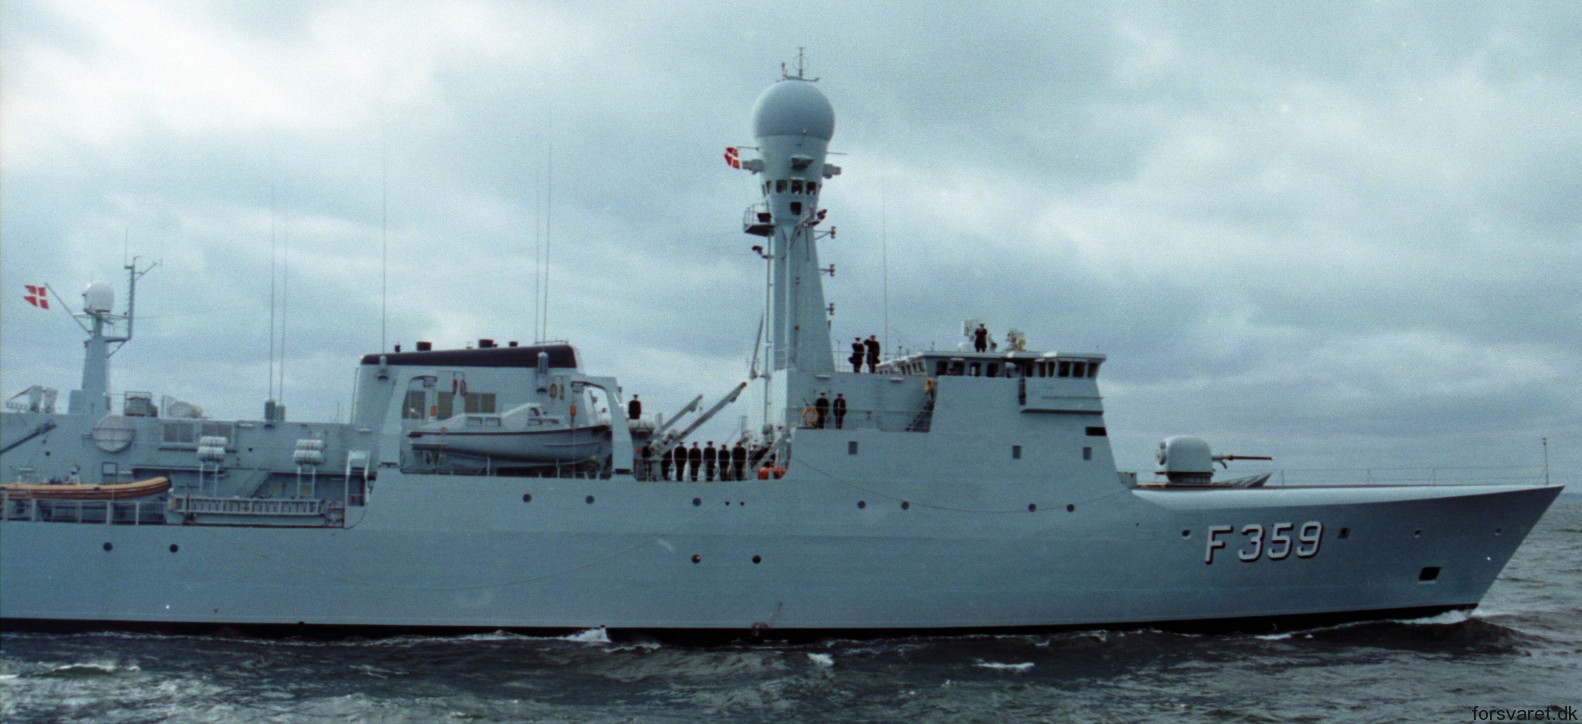 f-359 hdms vaedderen thetis class ocean patrol frigate royal danish navy kongelige danske marine kdm inspektionsskibet 16